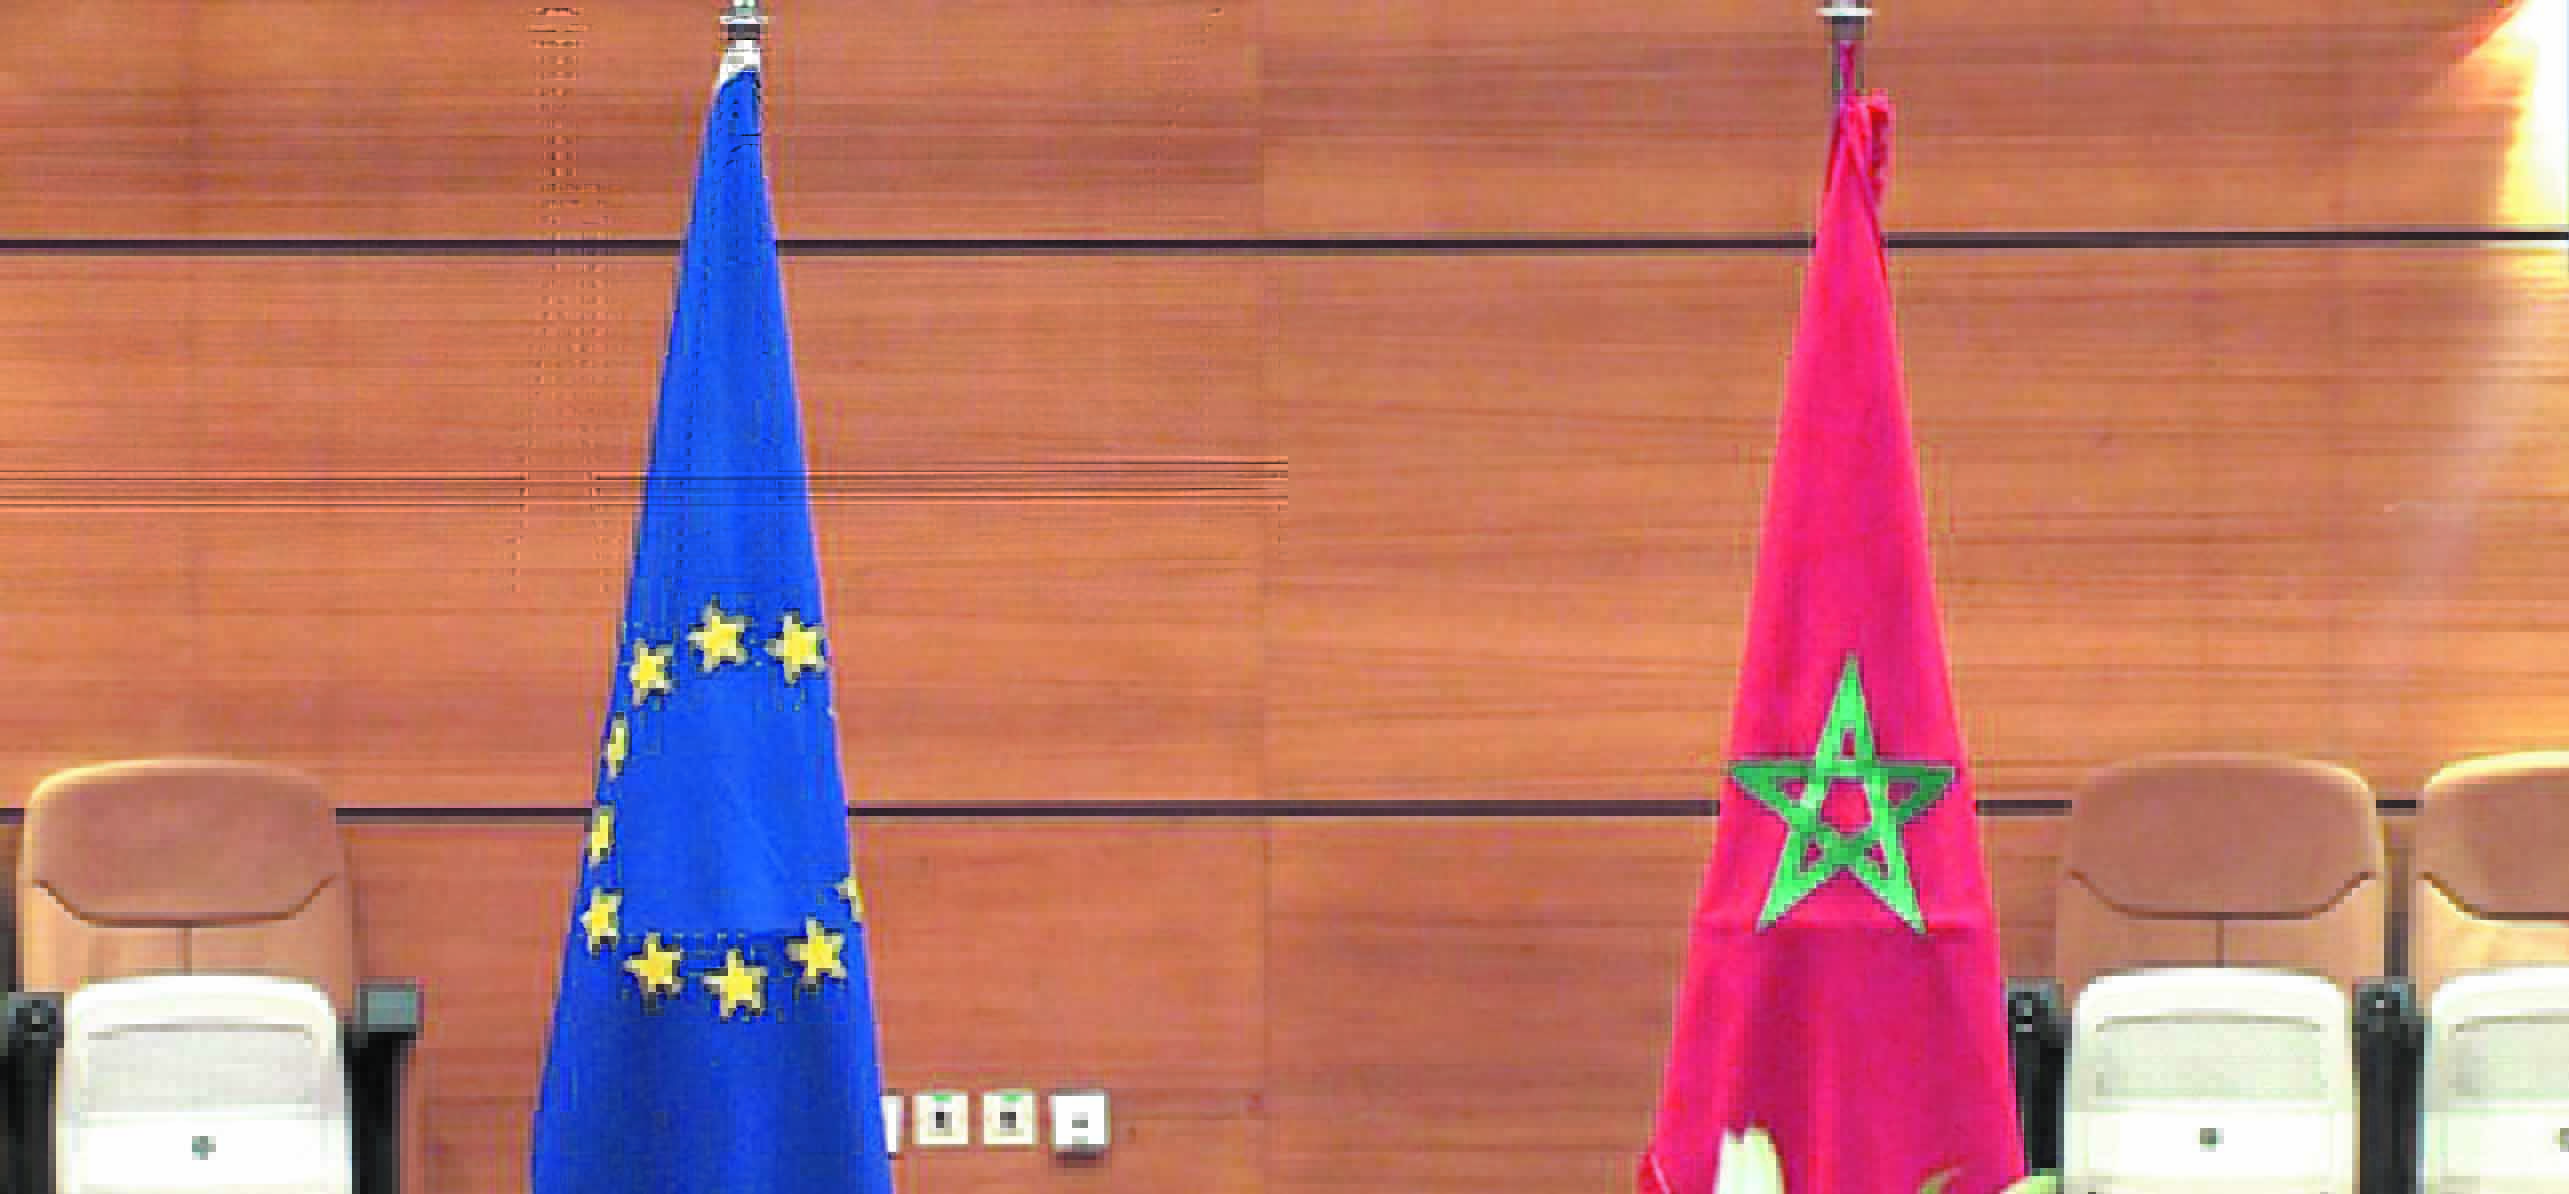 Info Politique Maroc: Actualités Politiques au Maroc et ailleurs